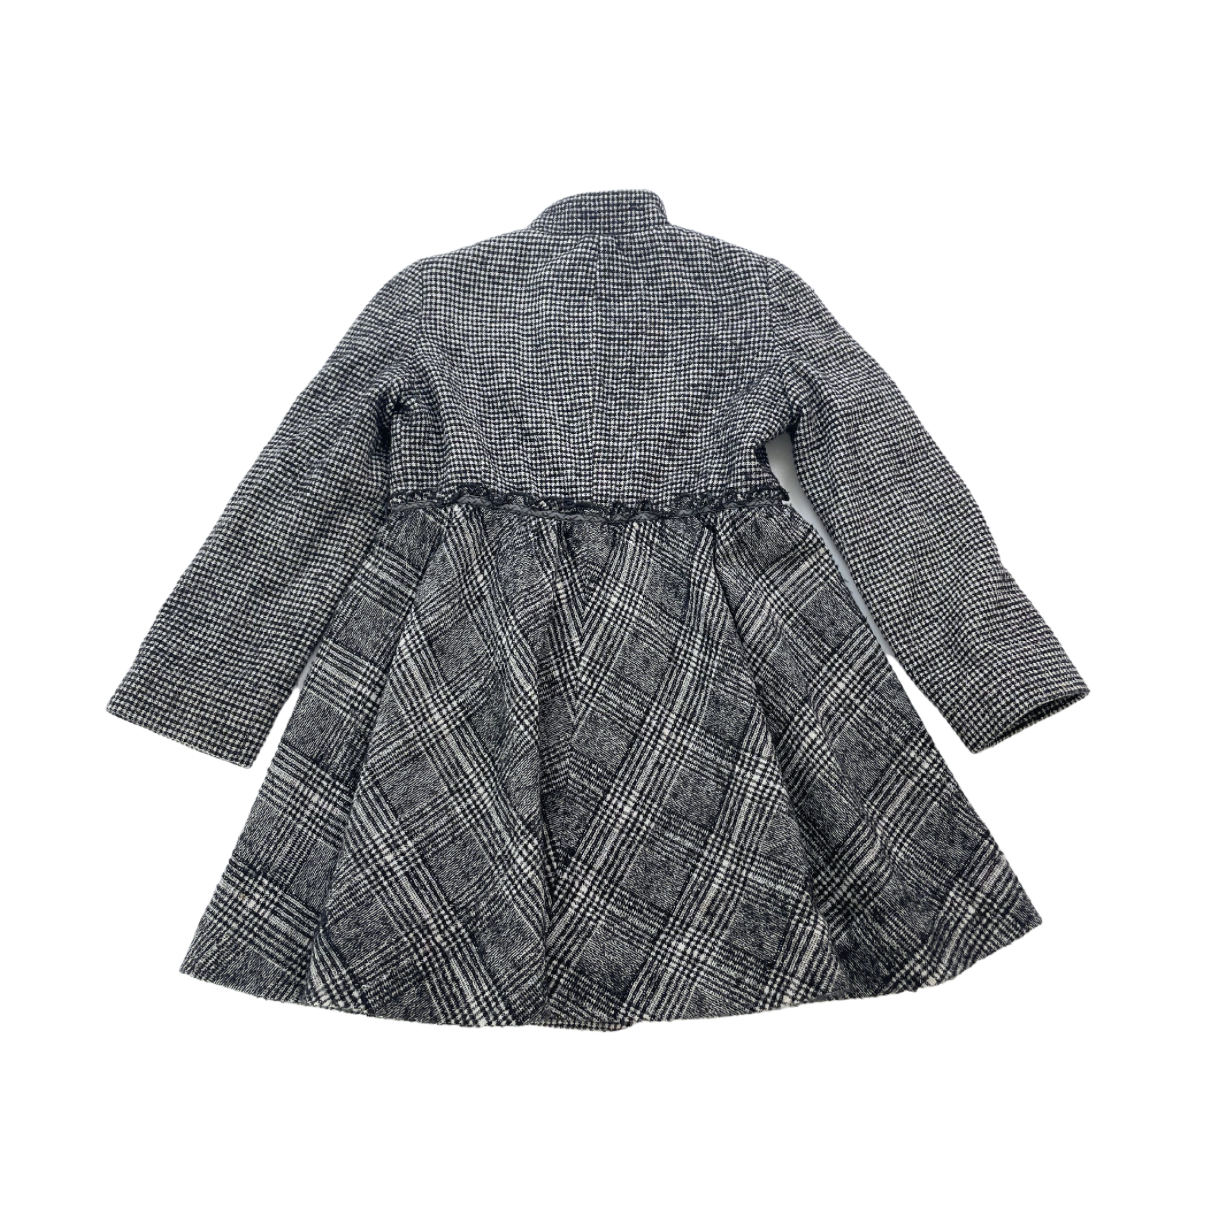 FENDI - Manteau en laine à carreaux noir et blanc - 5 ans